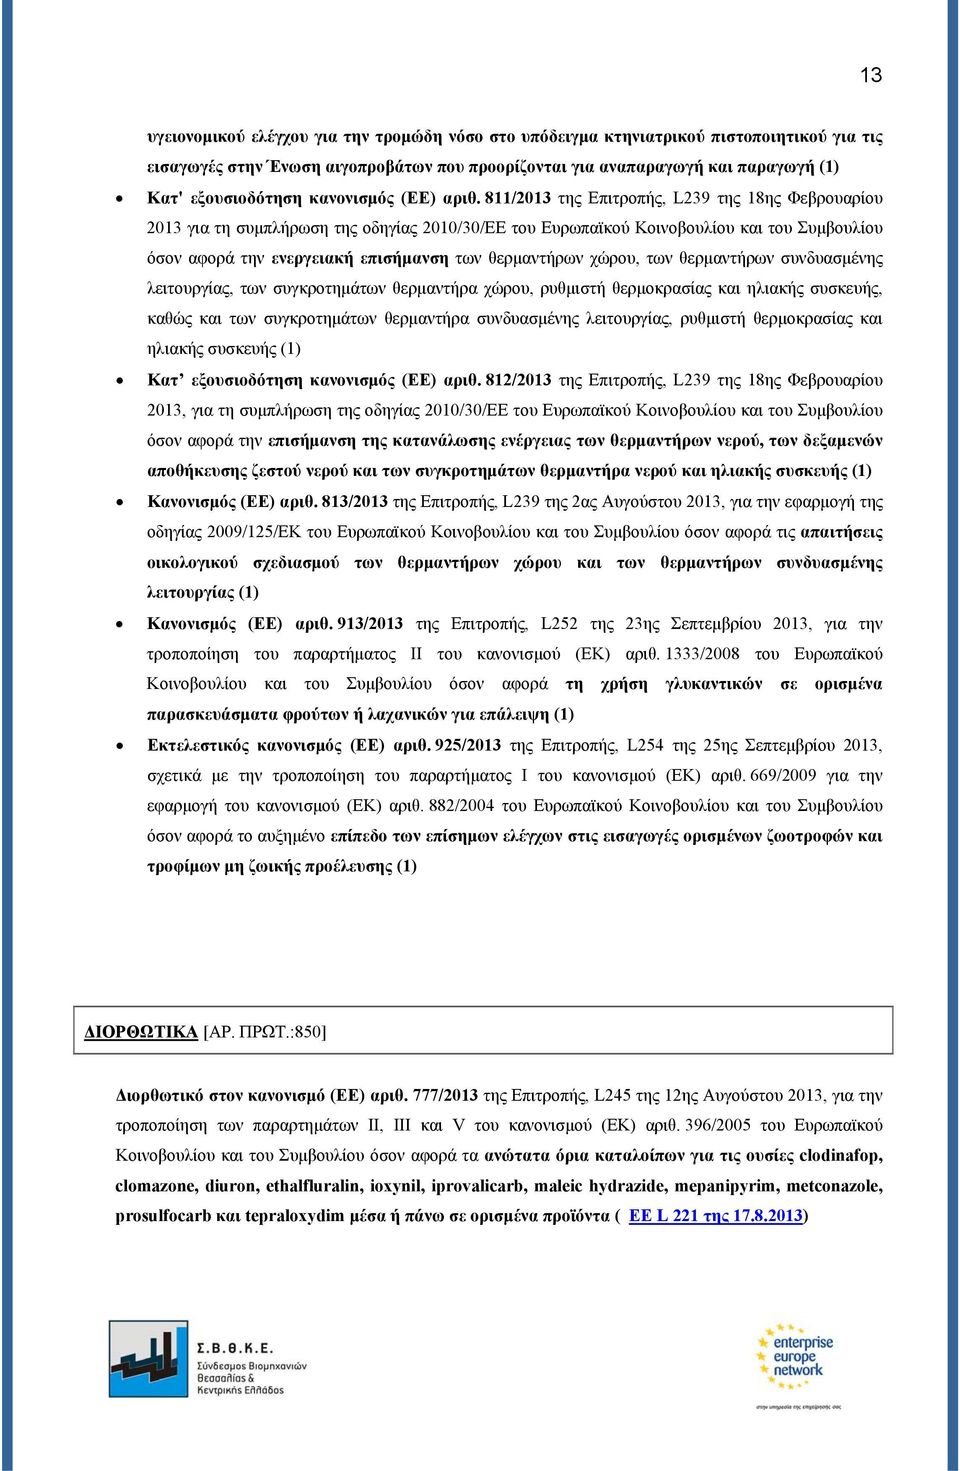 811/2013 της Επιτροπής, L239 της 18ης Φεβρουαρίου 2013 για τη συμπλήρωση της οδηγίας 2010/30/ΕΕ του Ευρωπαϊκού Κοινοβουλίου και του Συμβουλίου όσον αφορά την ενεργειακή επισήμανση των θερμαντήρων